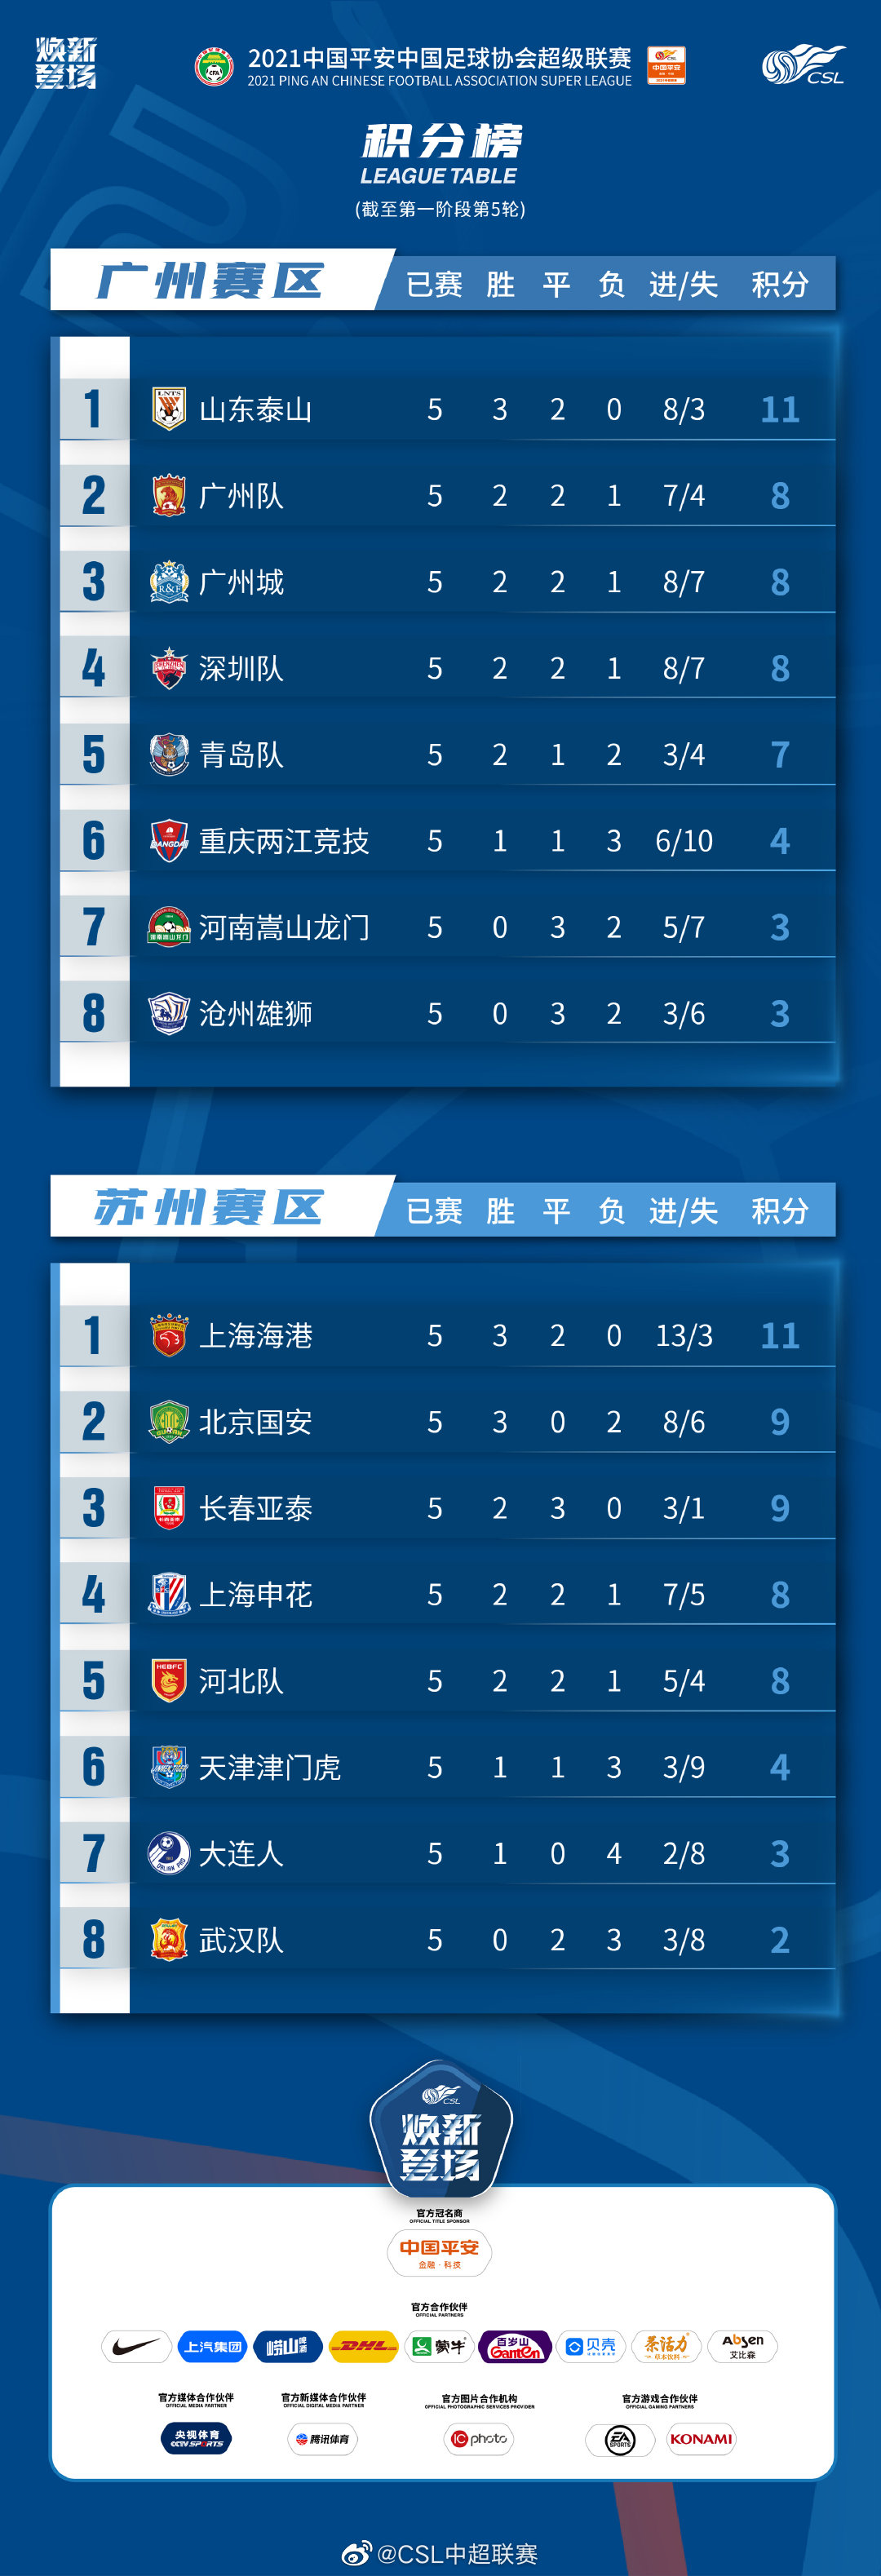 中超前五轮赛后积分榜:山东泰山,上海海港11分位居两大赛区榜首